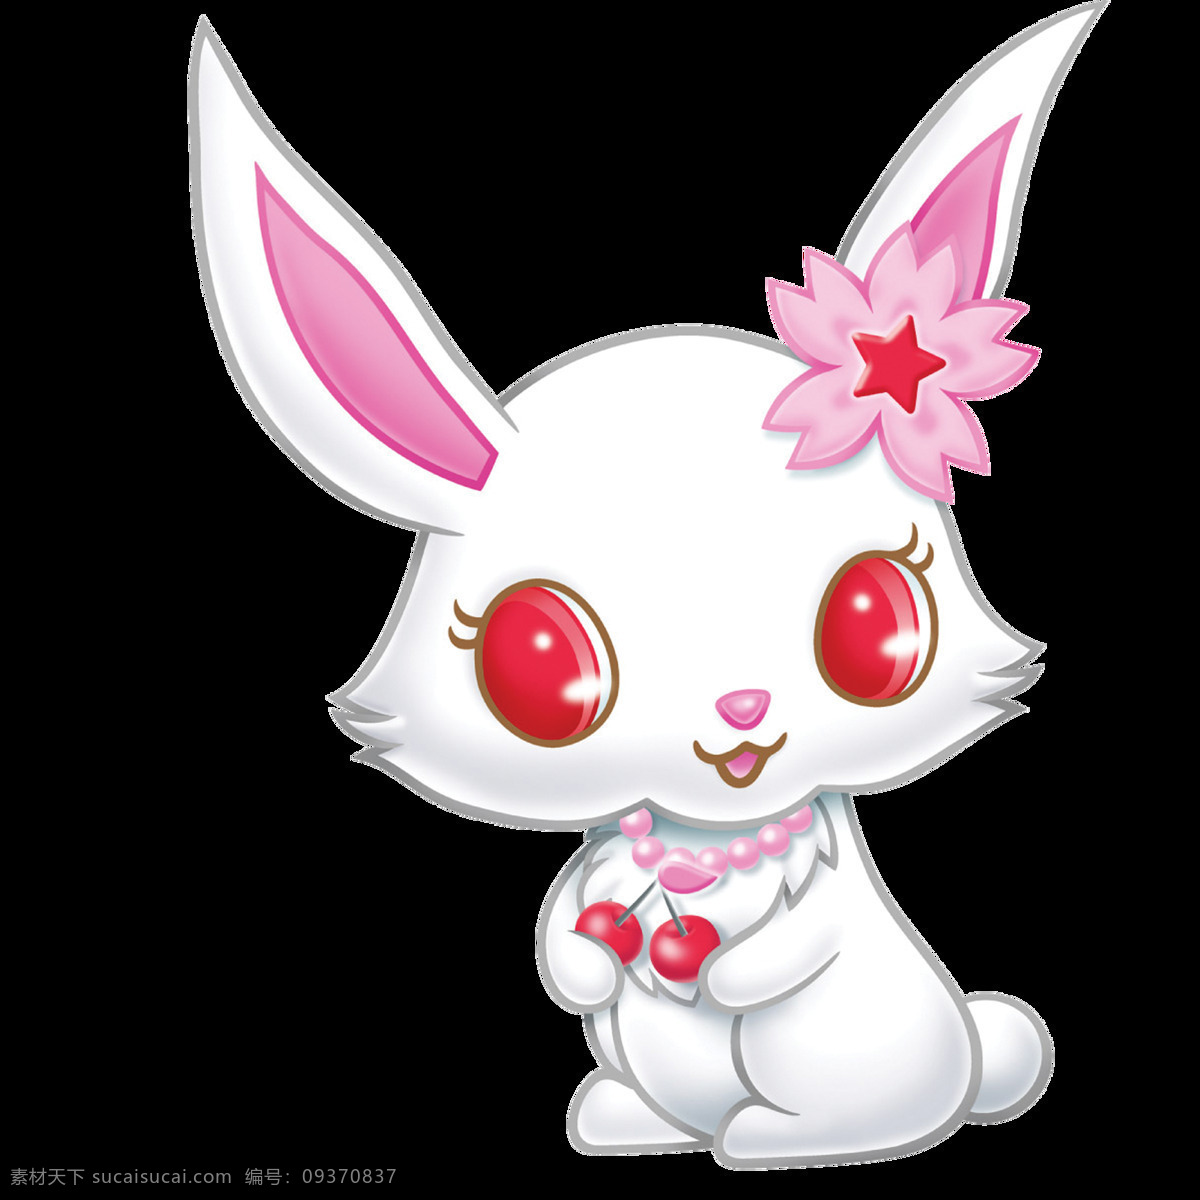 唯美 卡通 小 白兔 绘画 美观 可爱 小白兔 鲜明 生动